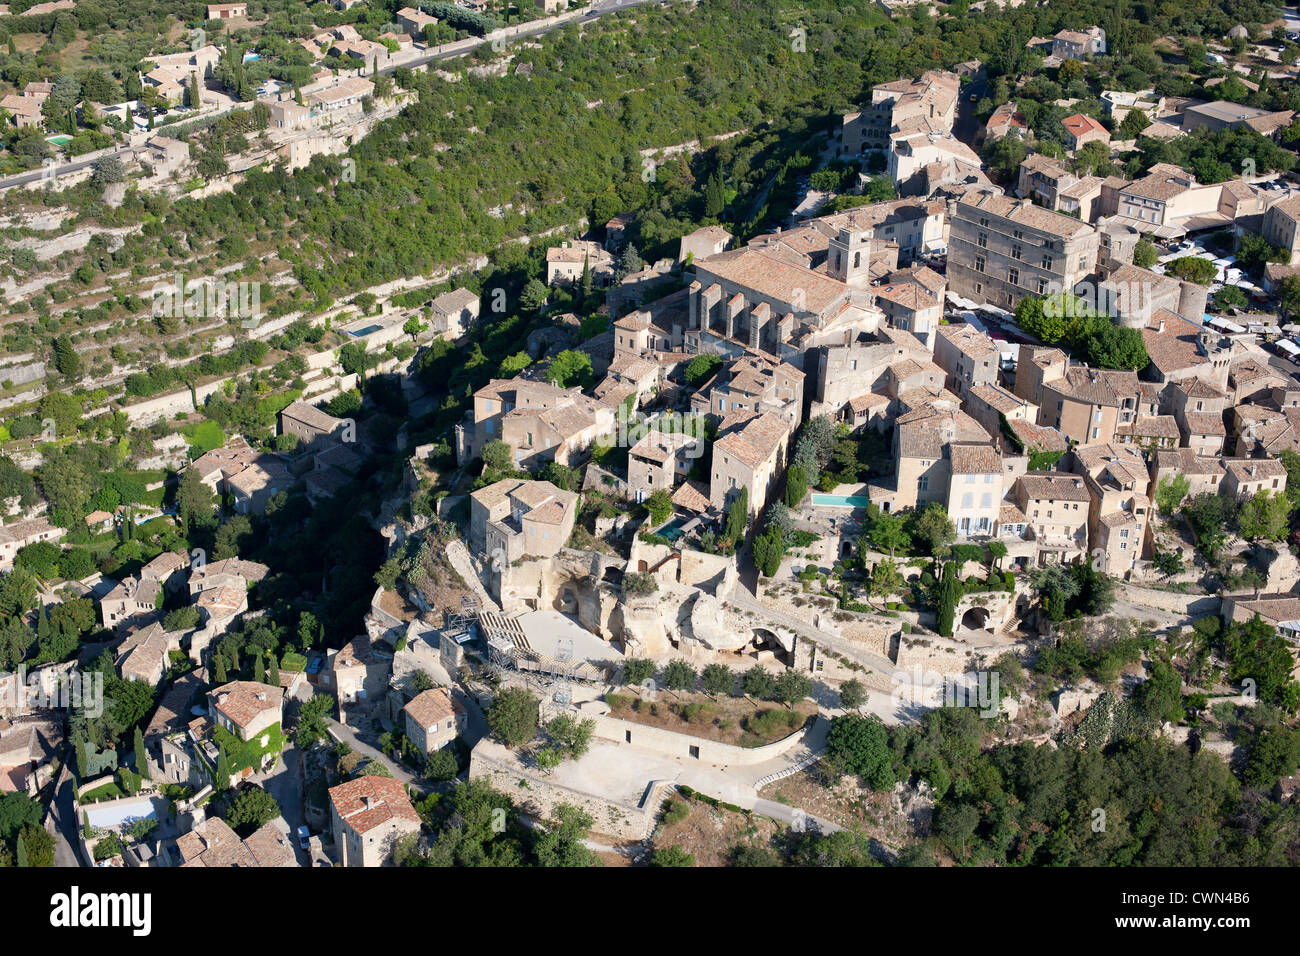 LUFTAUFNAHME. Mittelalterliches Dorf auf einem Hügel. Gordes, Lubéron, Vaucluse, Provence, Frankreich. Stockfoto